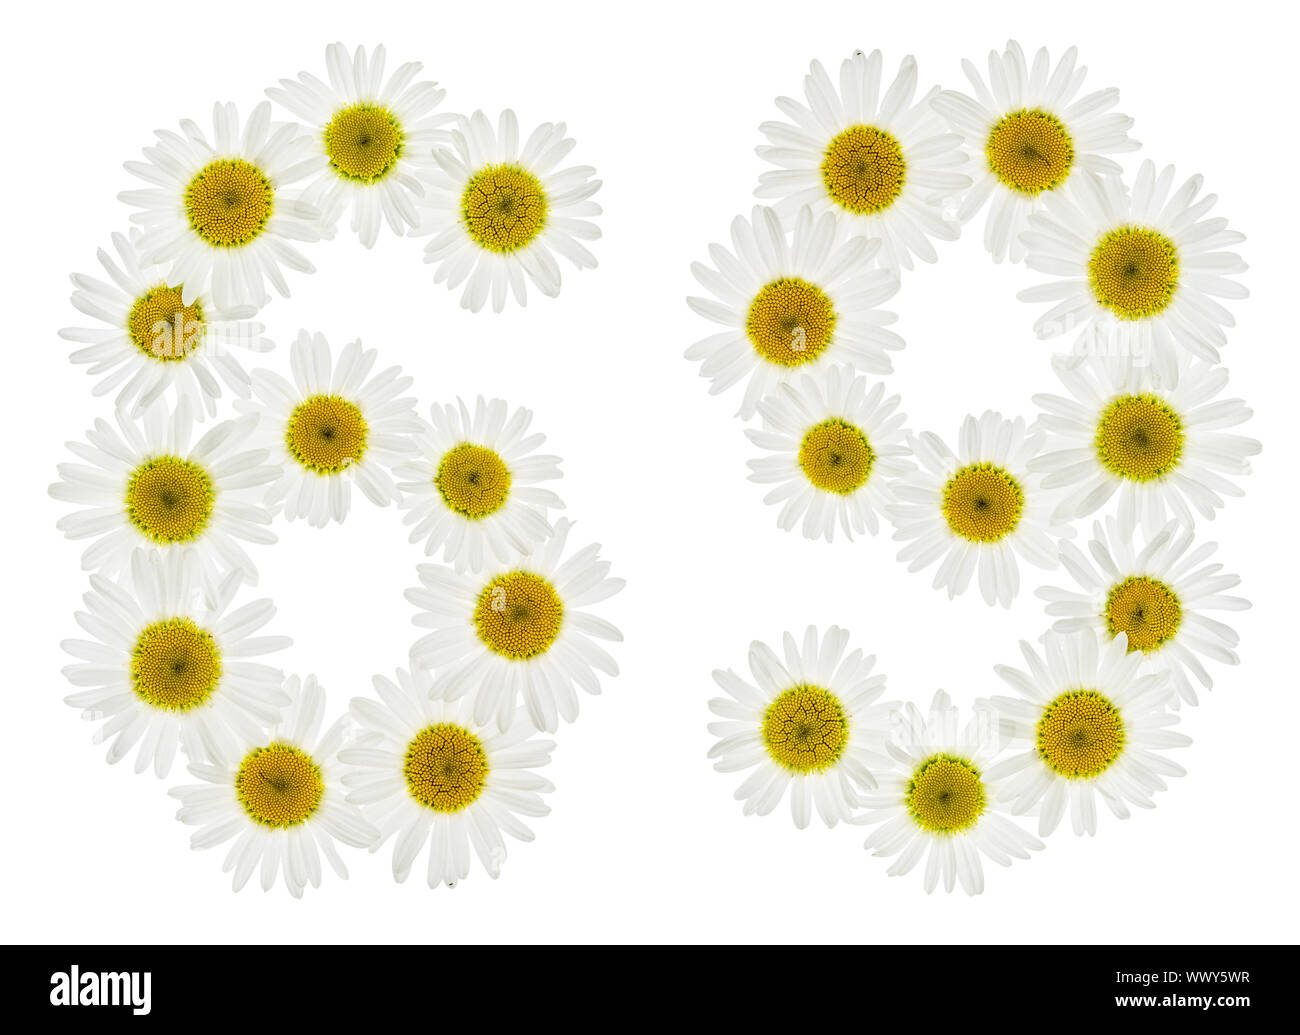 Chiffre arabe 69, soixante-neuf, à partir de fleurs blanches de camomille, isolé sur fond blanc Banque D'Images